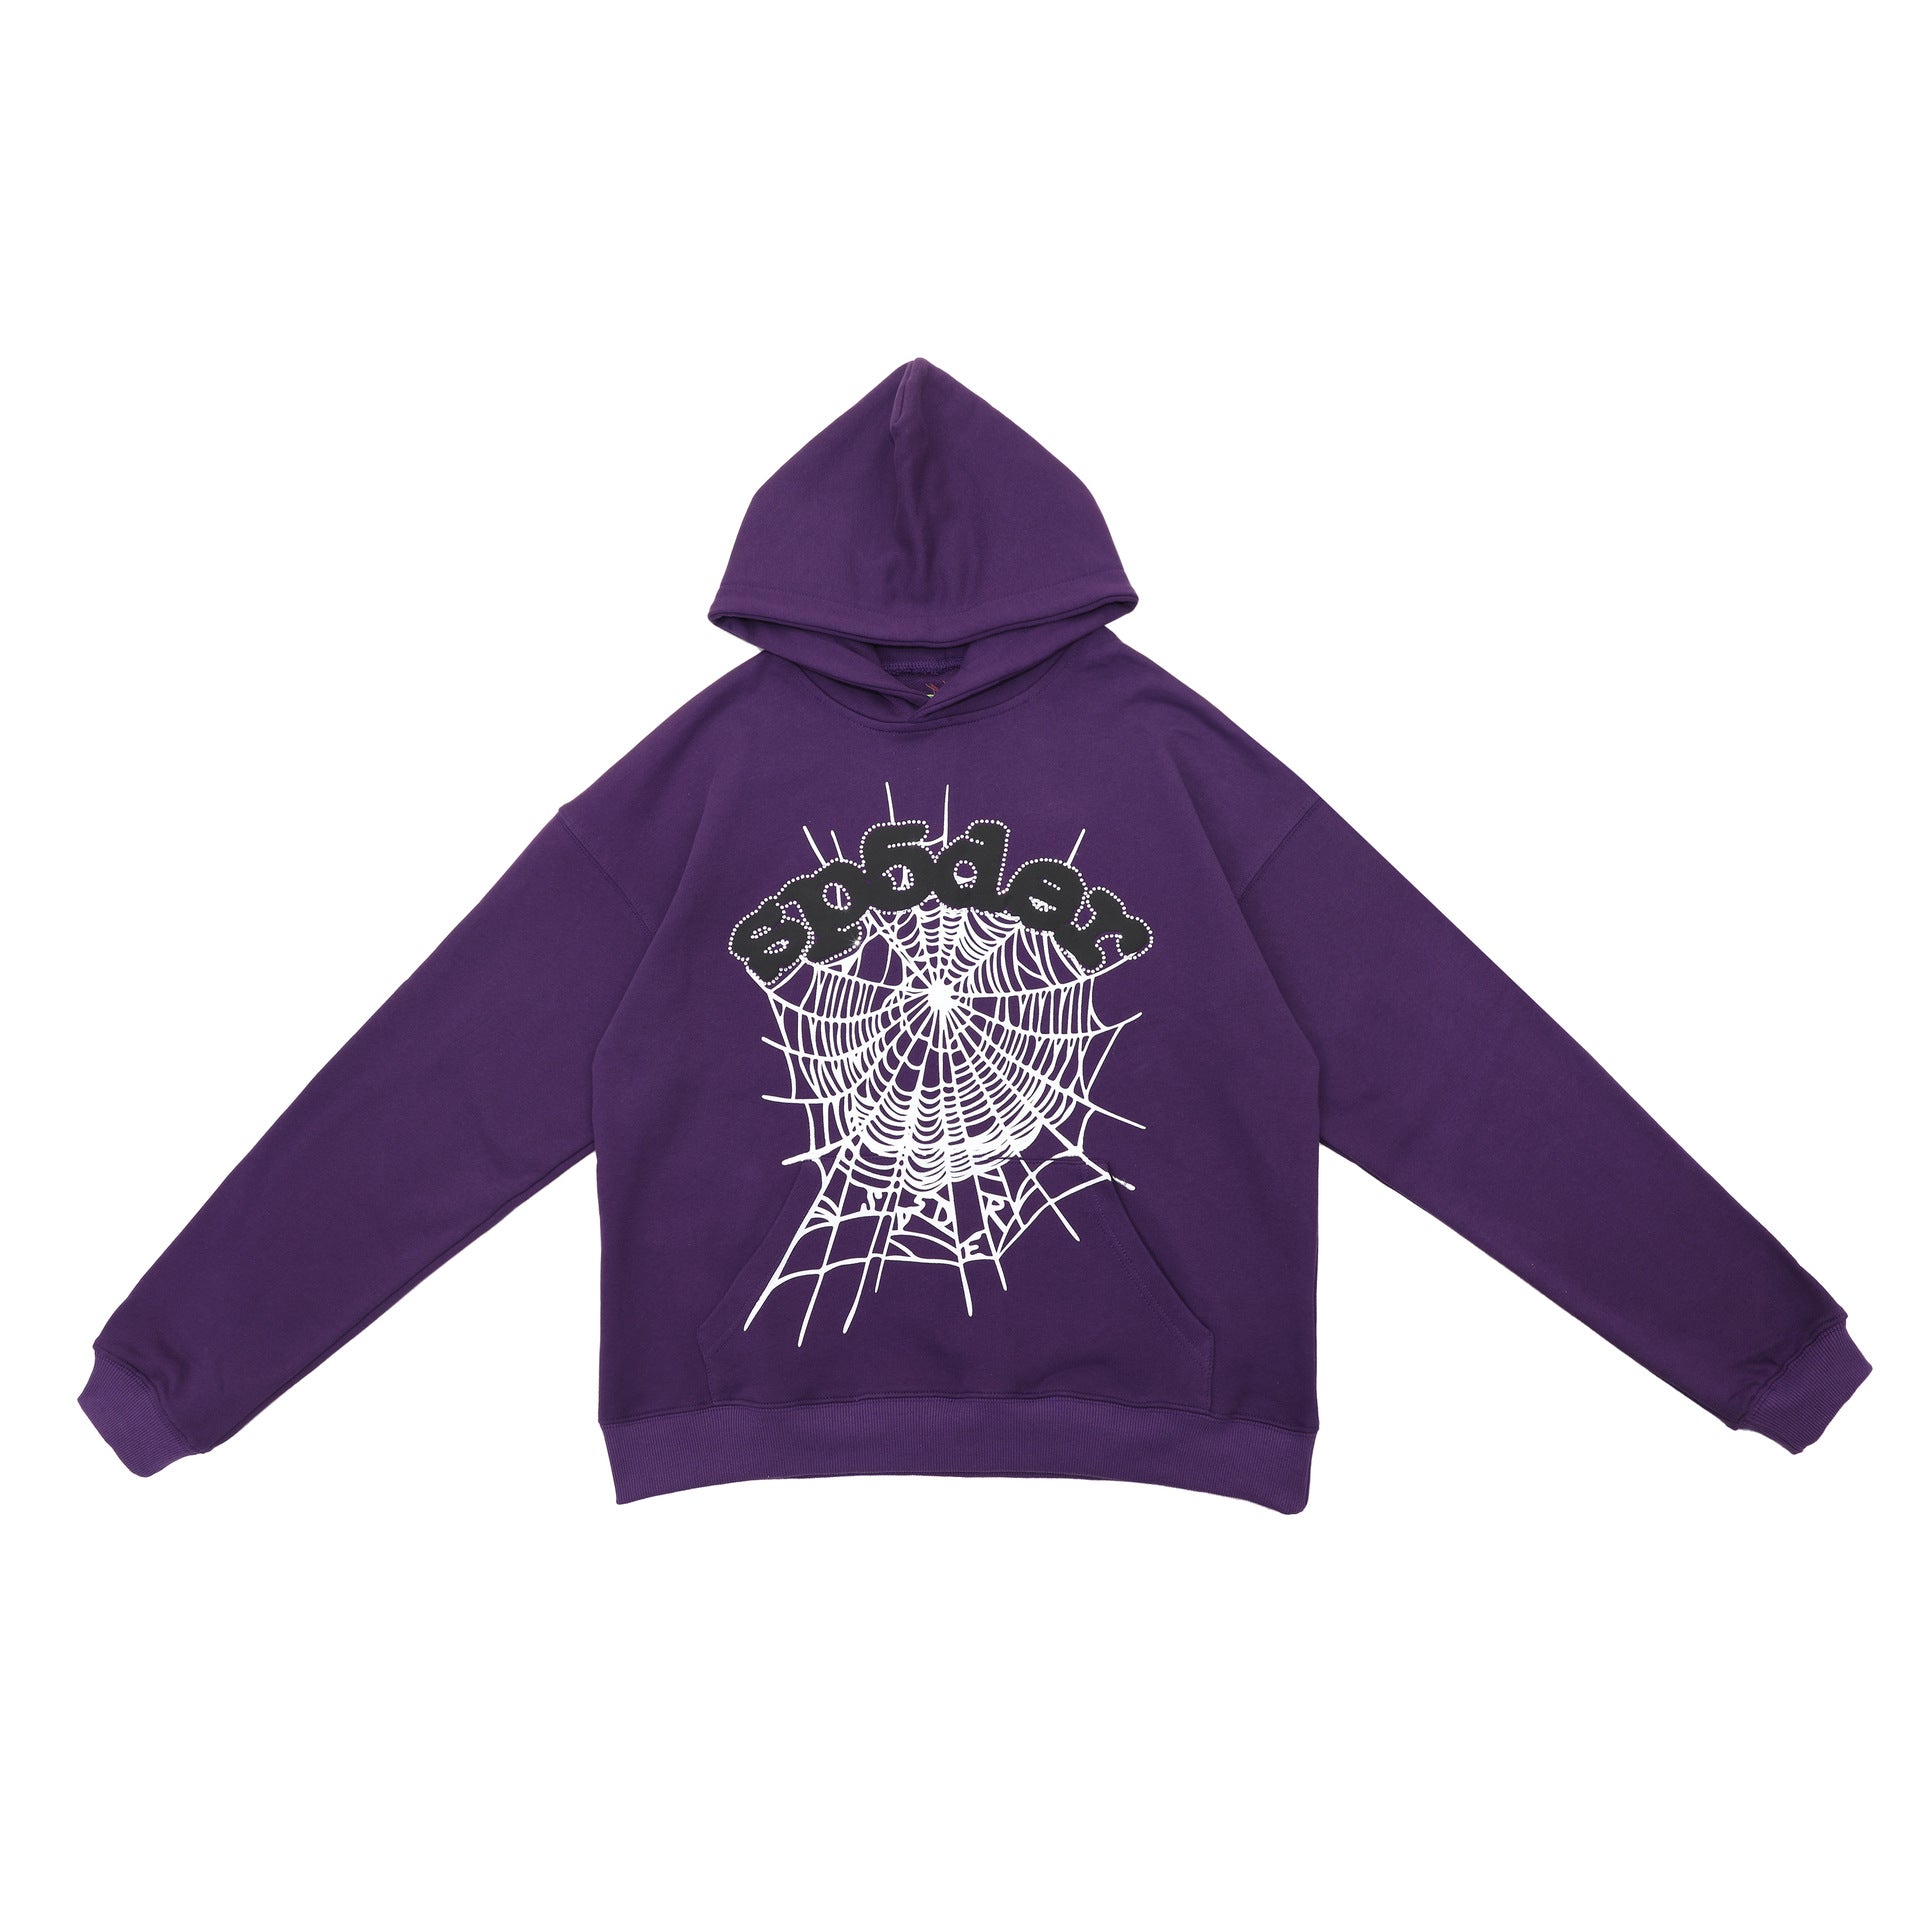 Bold Purple Sp5der Hoodie - Eye - Catching Web Print Hooded Sweatshirt - Seakoff